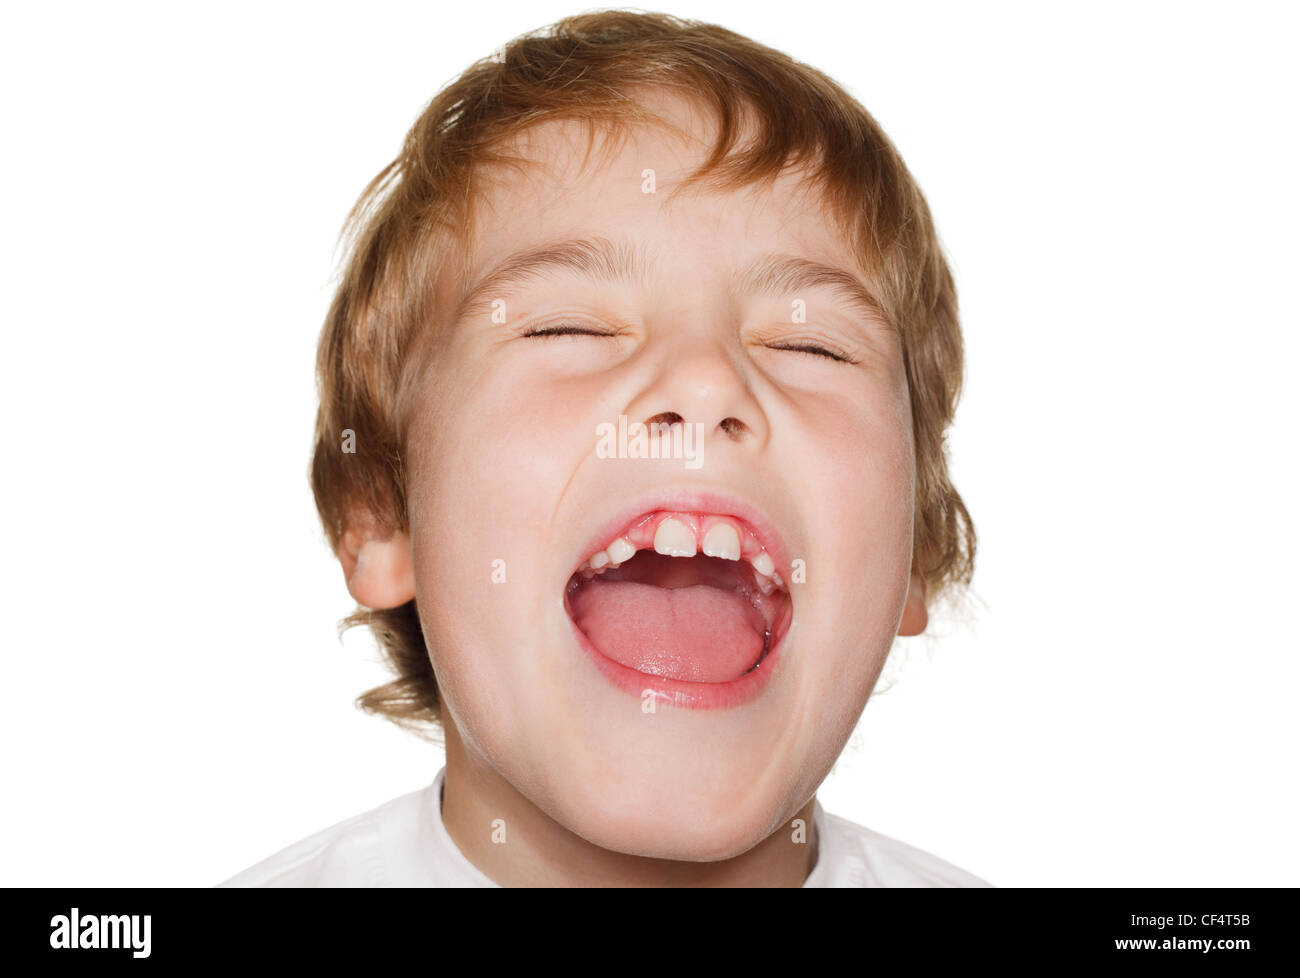 Porträt Kleinkind in einem weißen T-shirt Fotostudio, offenem Mund und Augen schließen. Lachen Stockfoto